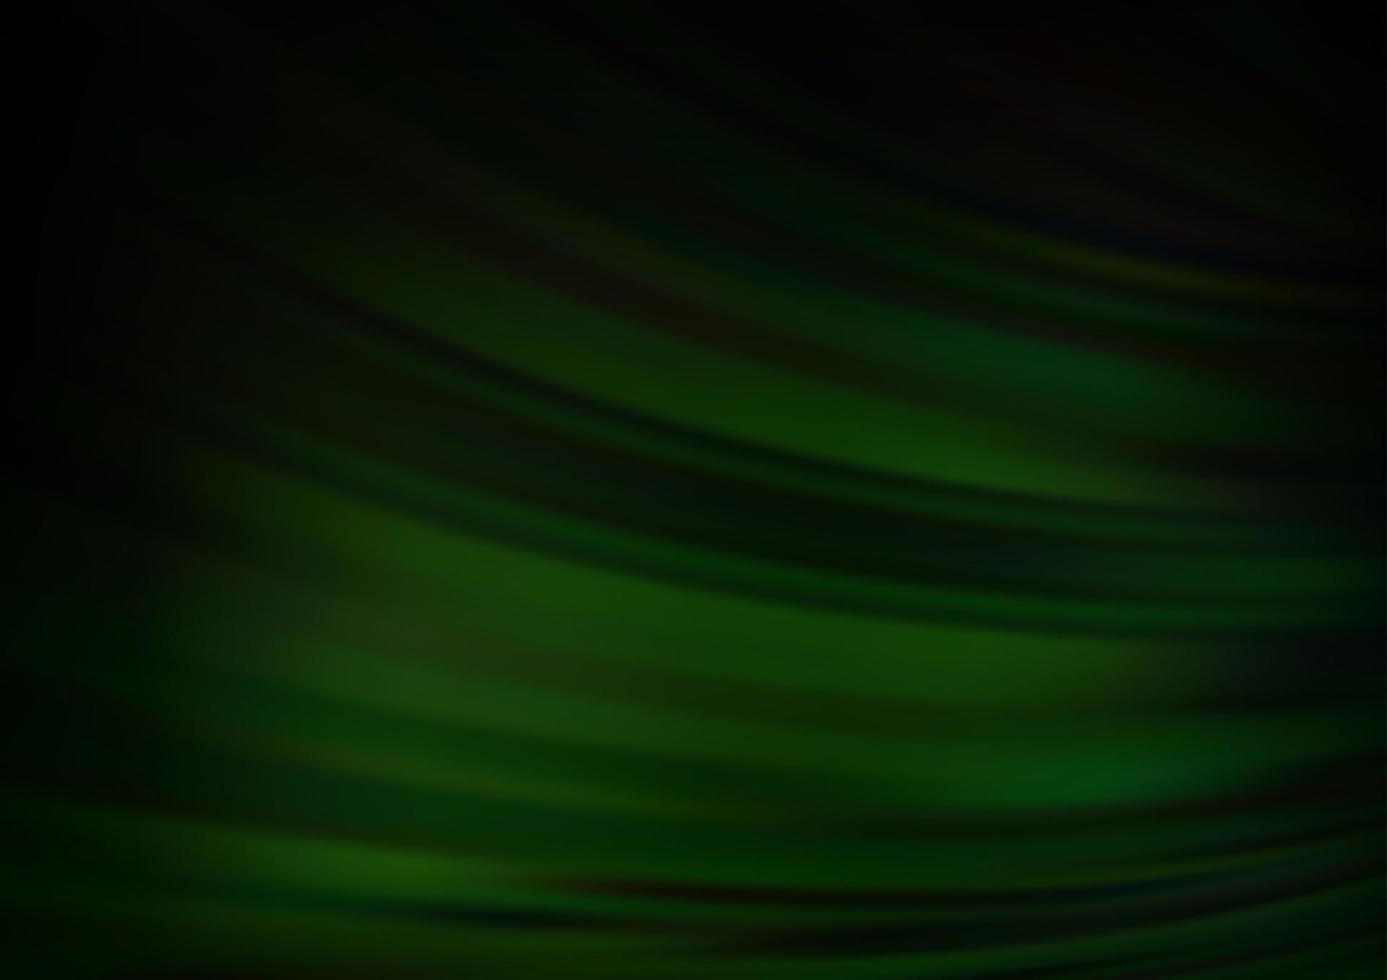 modelo de vetor verde escuro com linhas abstratas.